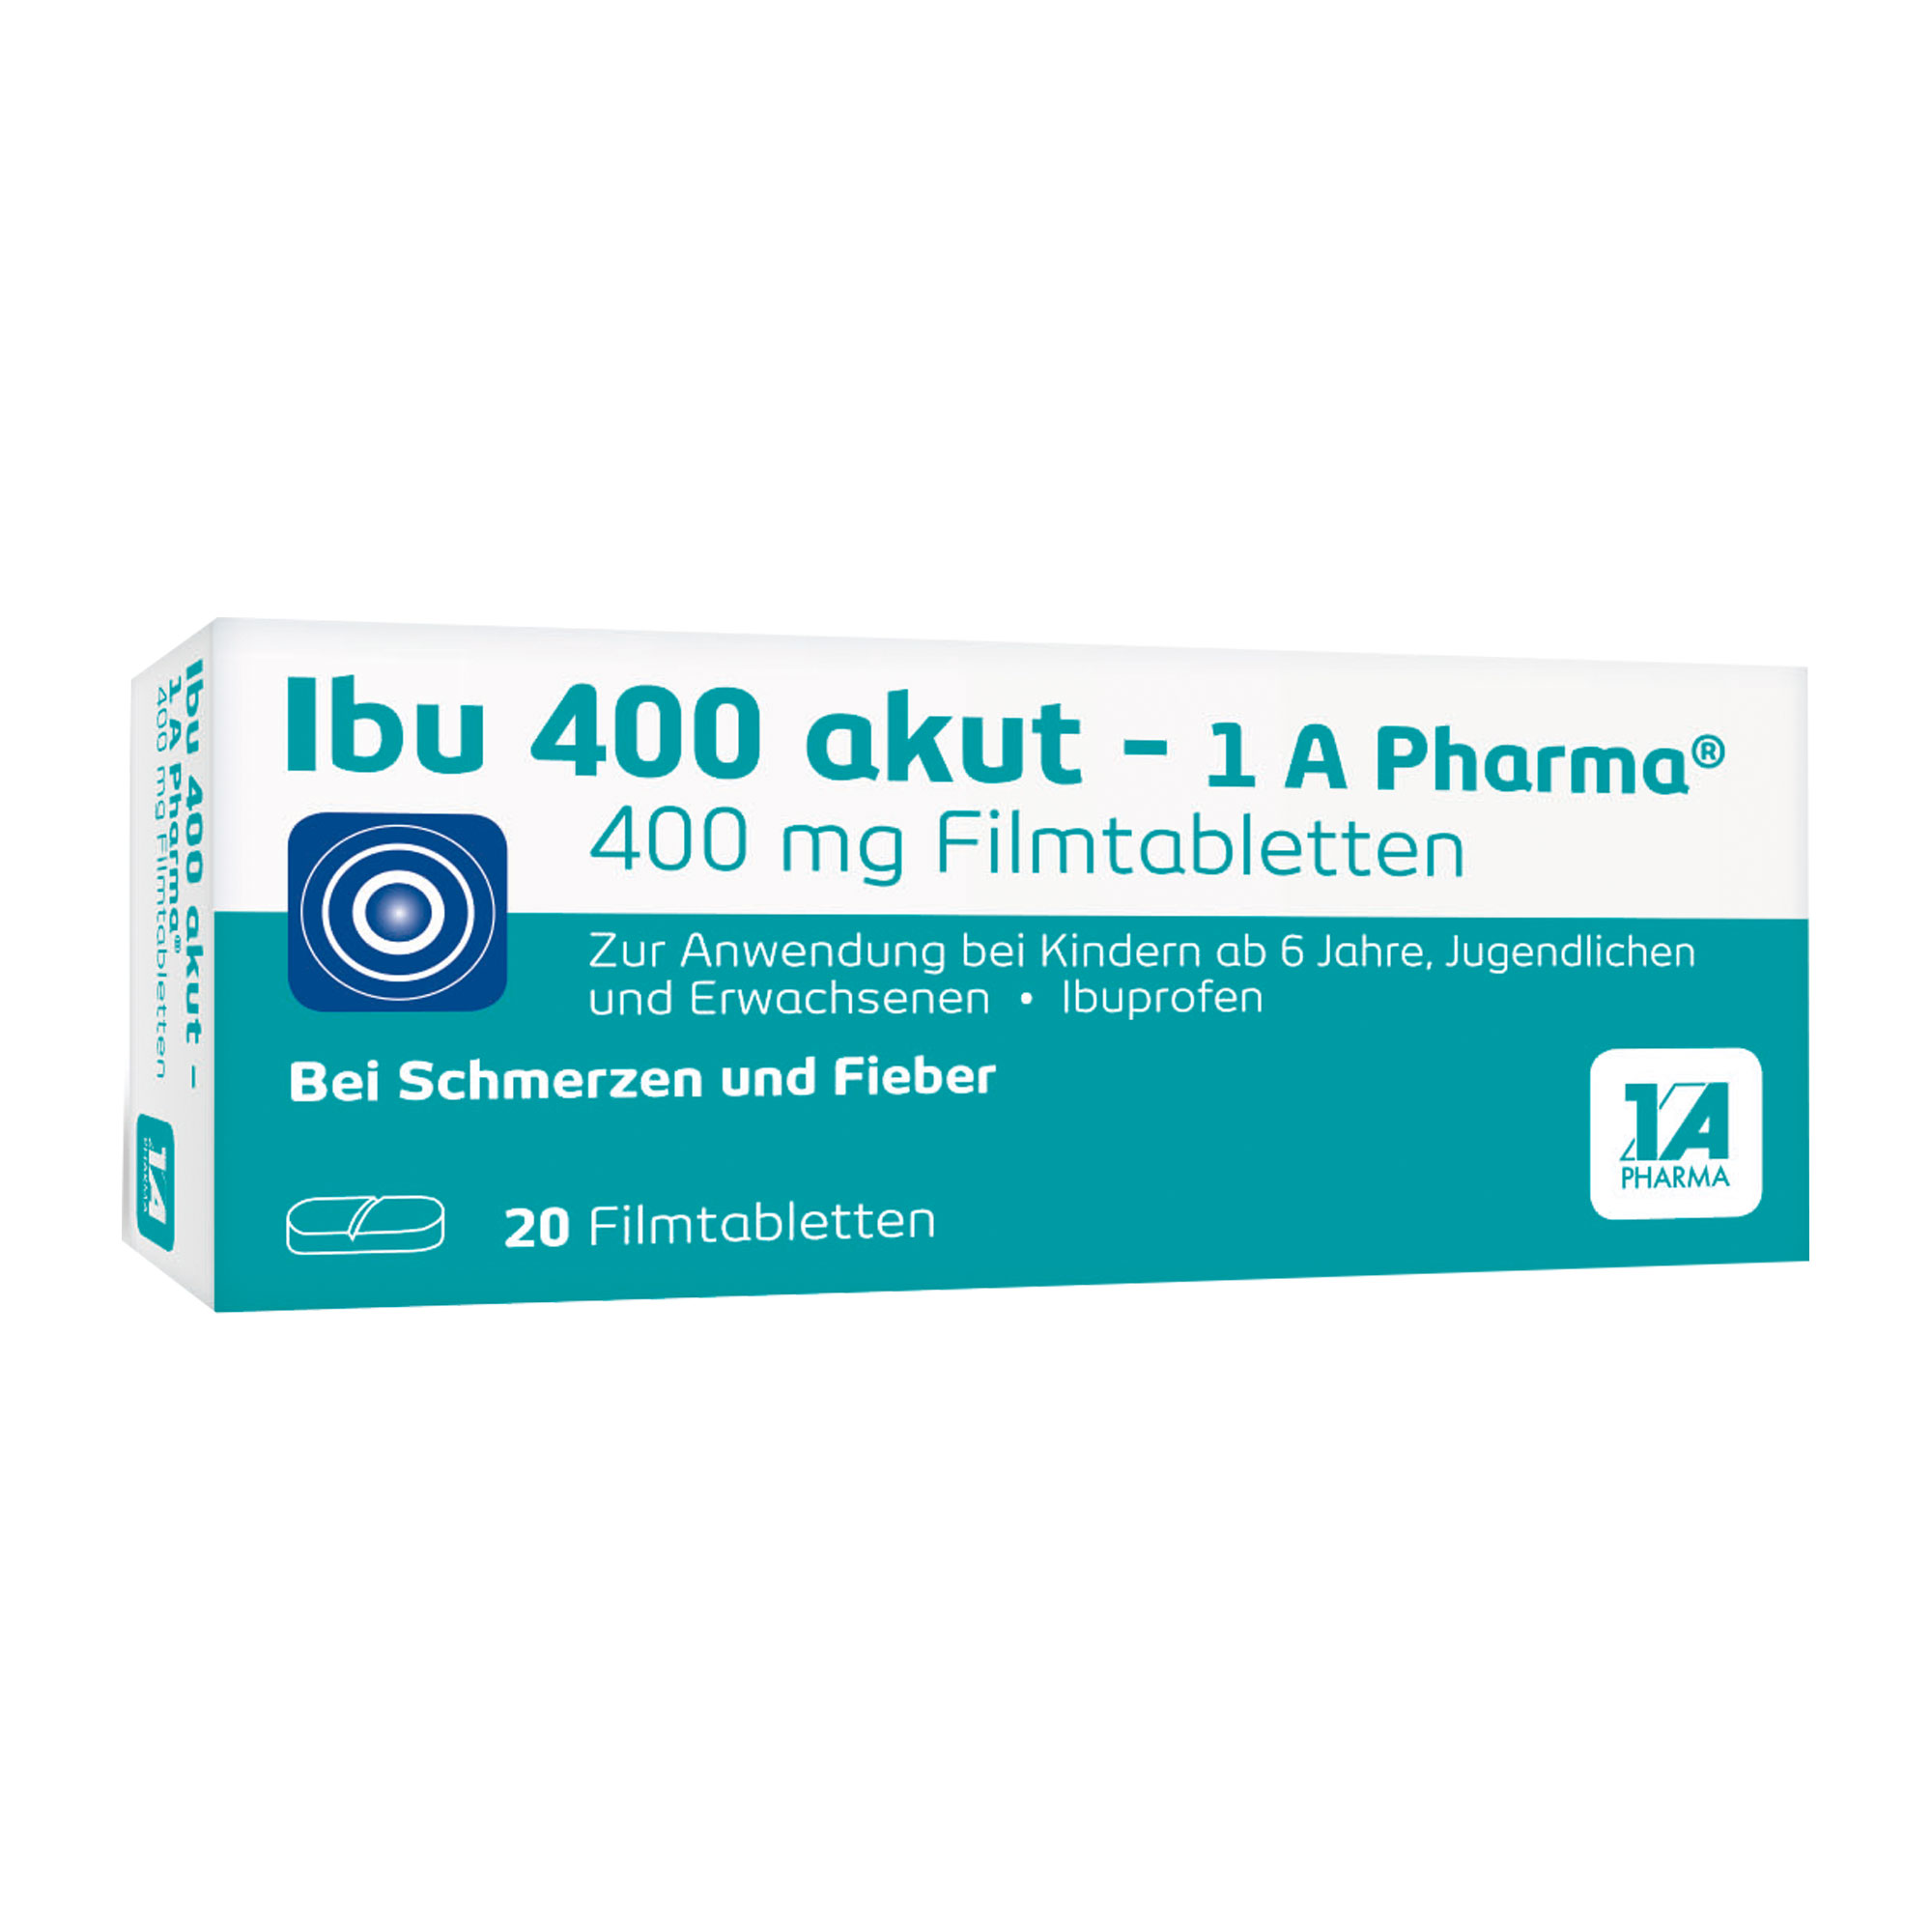 【ᐅᐅ】 Ibu 600 1a Pharma Test 2020 - Alle Top Produkte am Markt im Test!